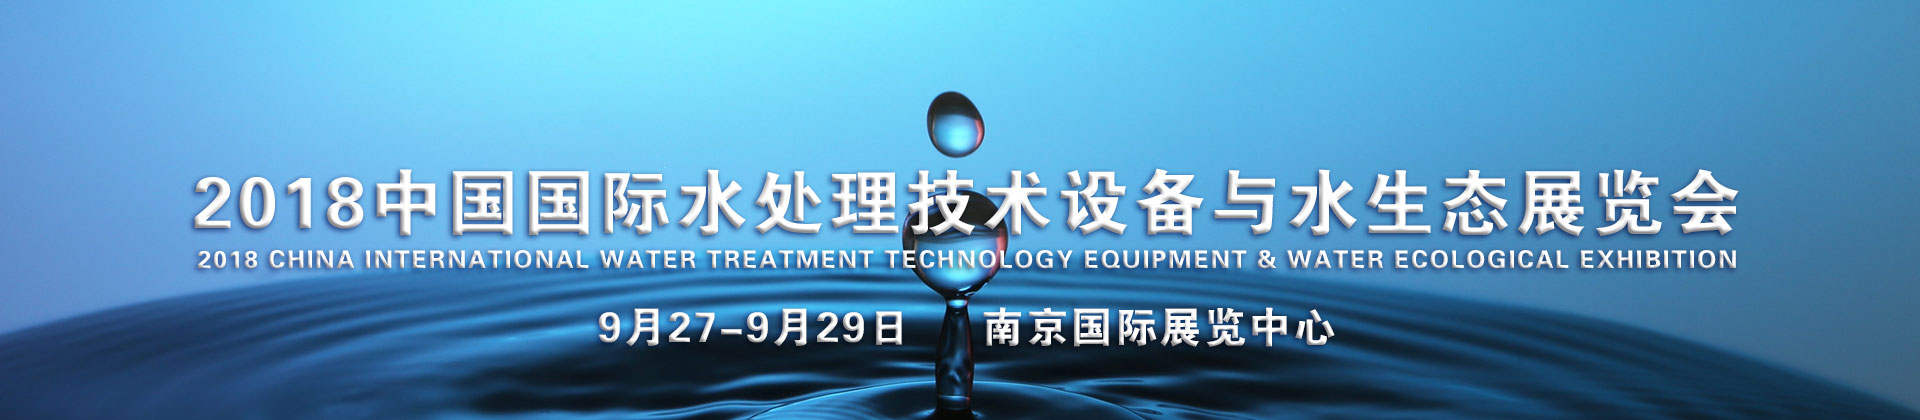 2018中国国际水处理技术设备与水生态展览会